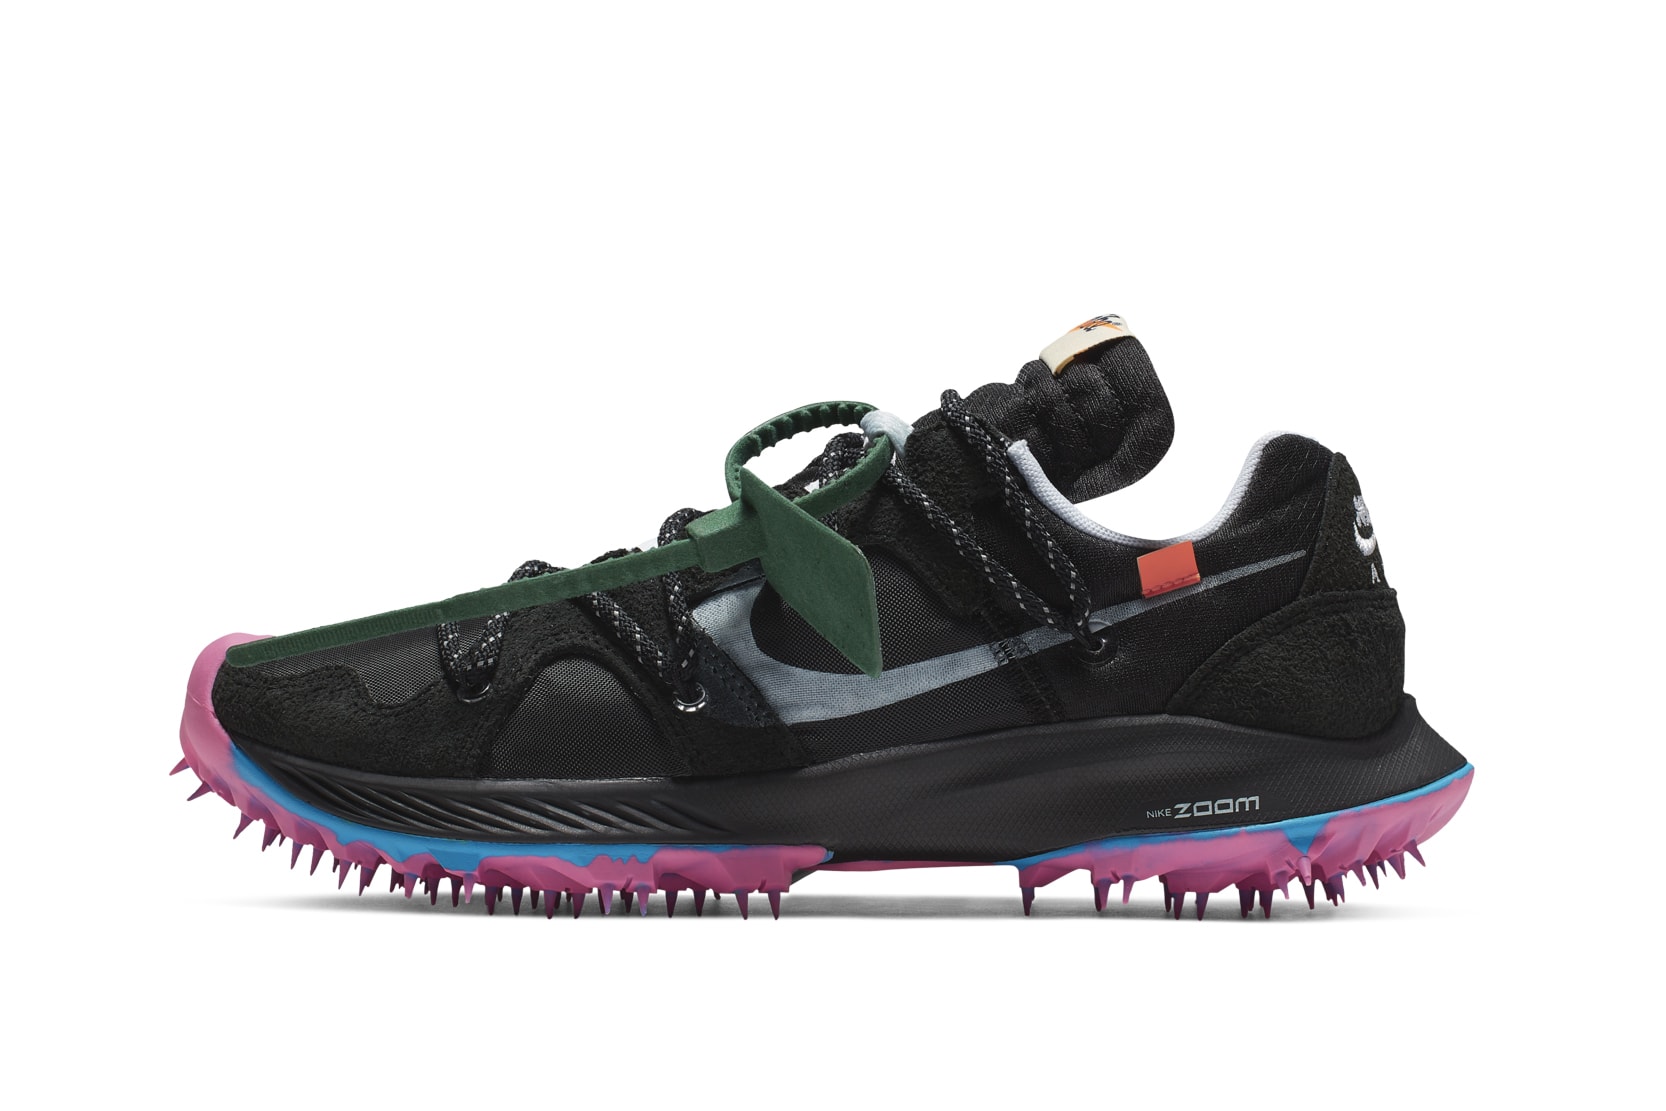 Nike x Off-White Zoom Terra Kiger 5 Release Date Virgil Abloh Sneaker Shoe Drop Athlete in Progress Caster Semenya